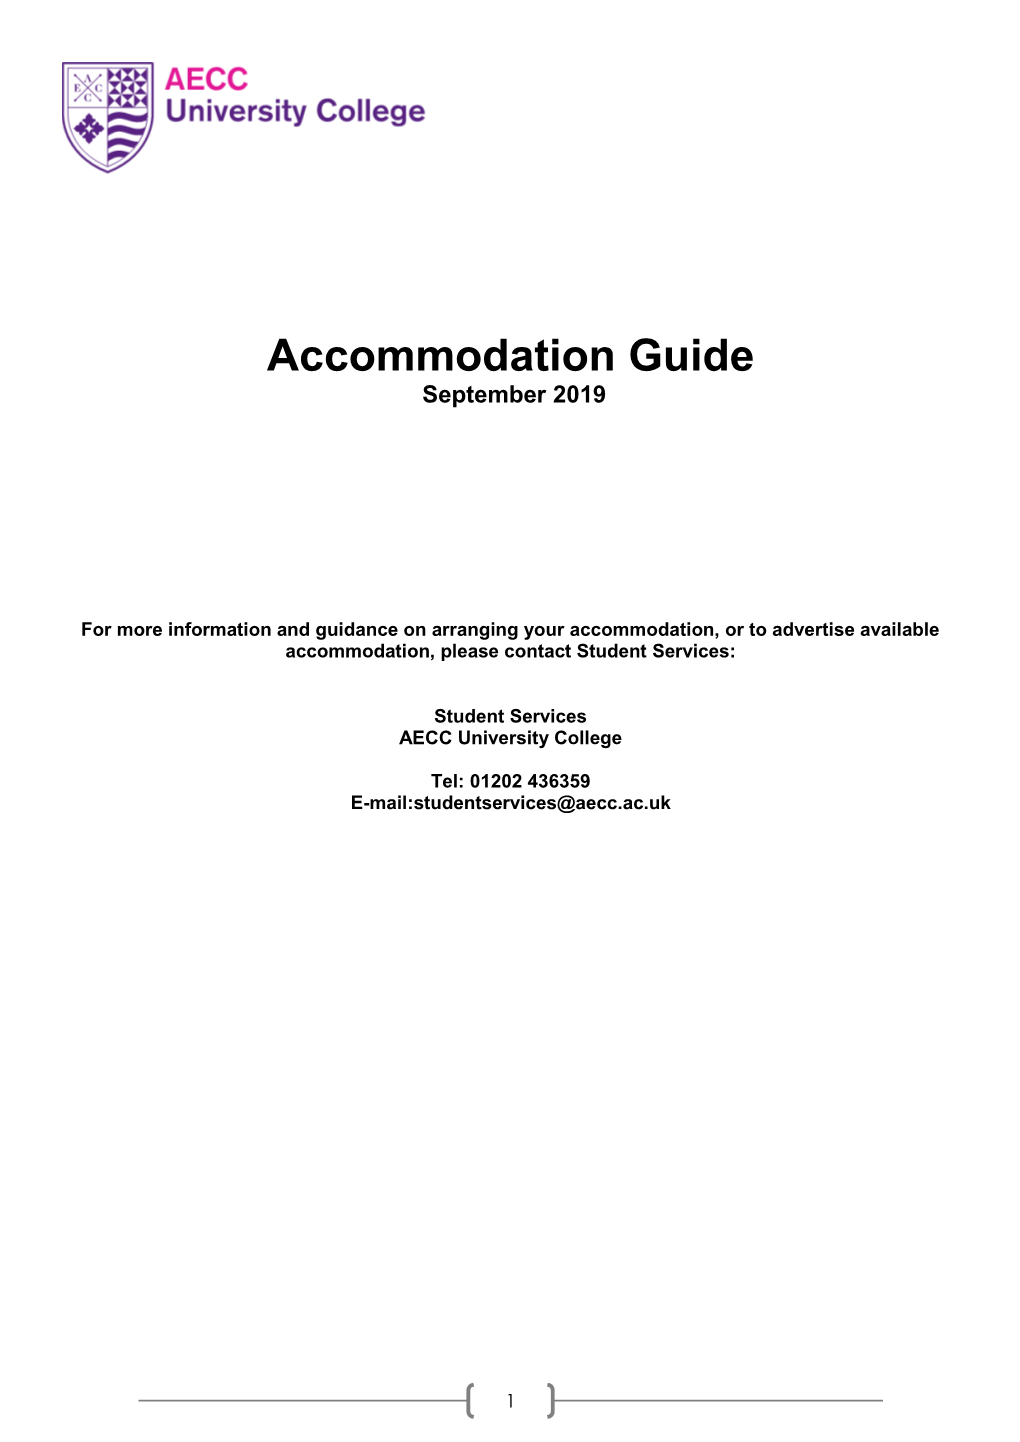 Accommodation Guide September 2019